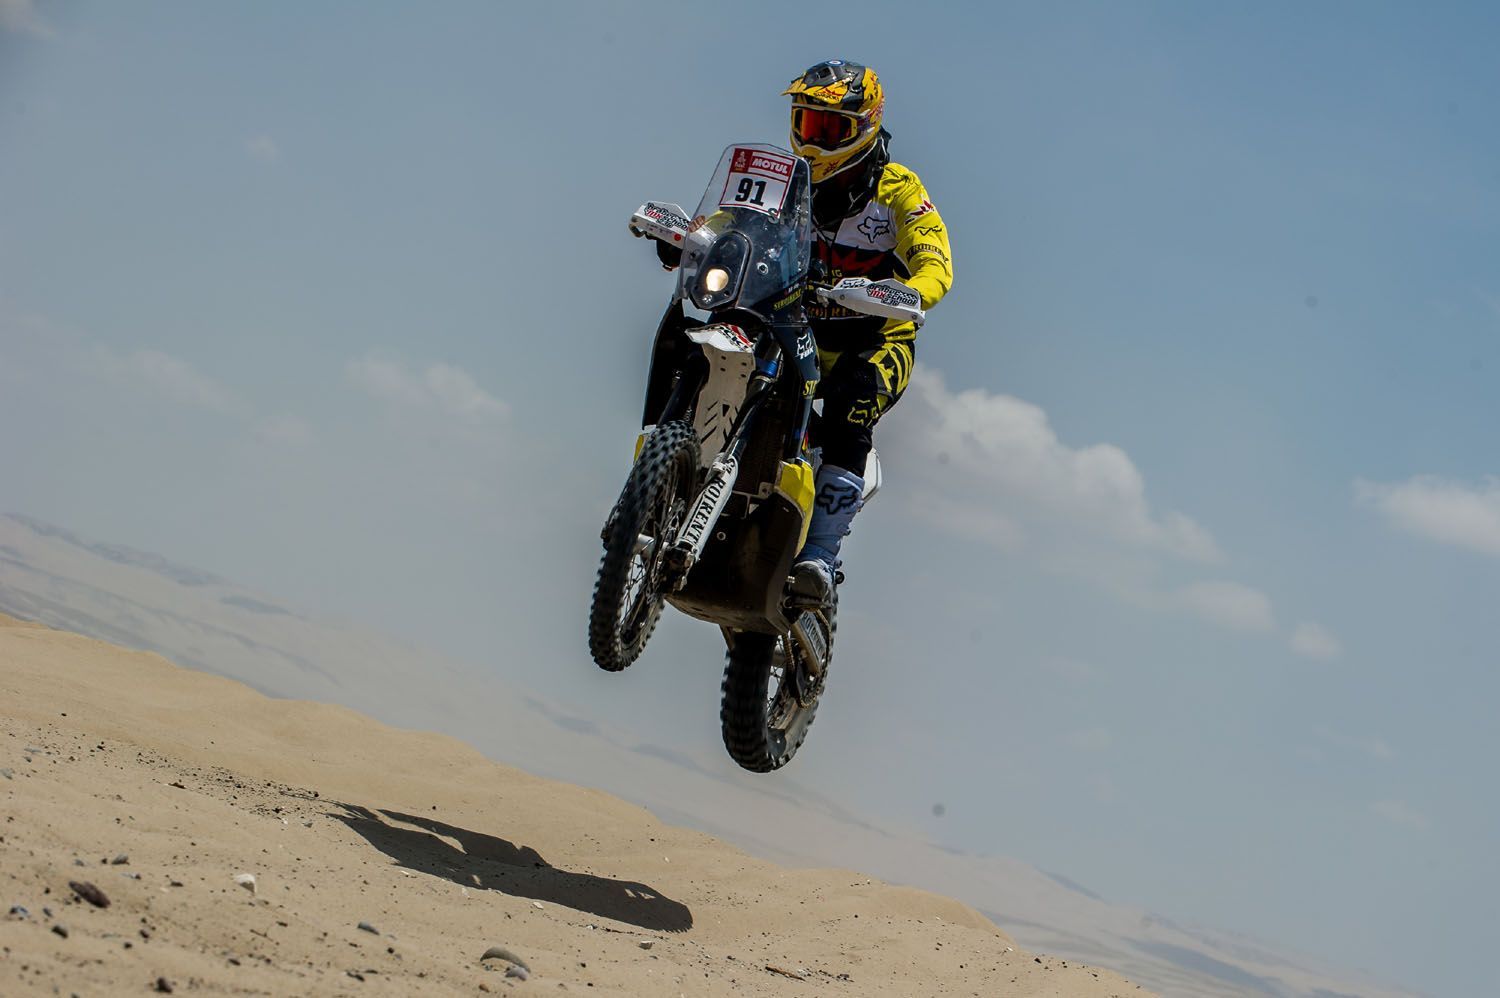 Rallye Dakar 2018, 2. etapa: Jan Brabec, Husqvarna